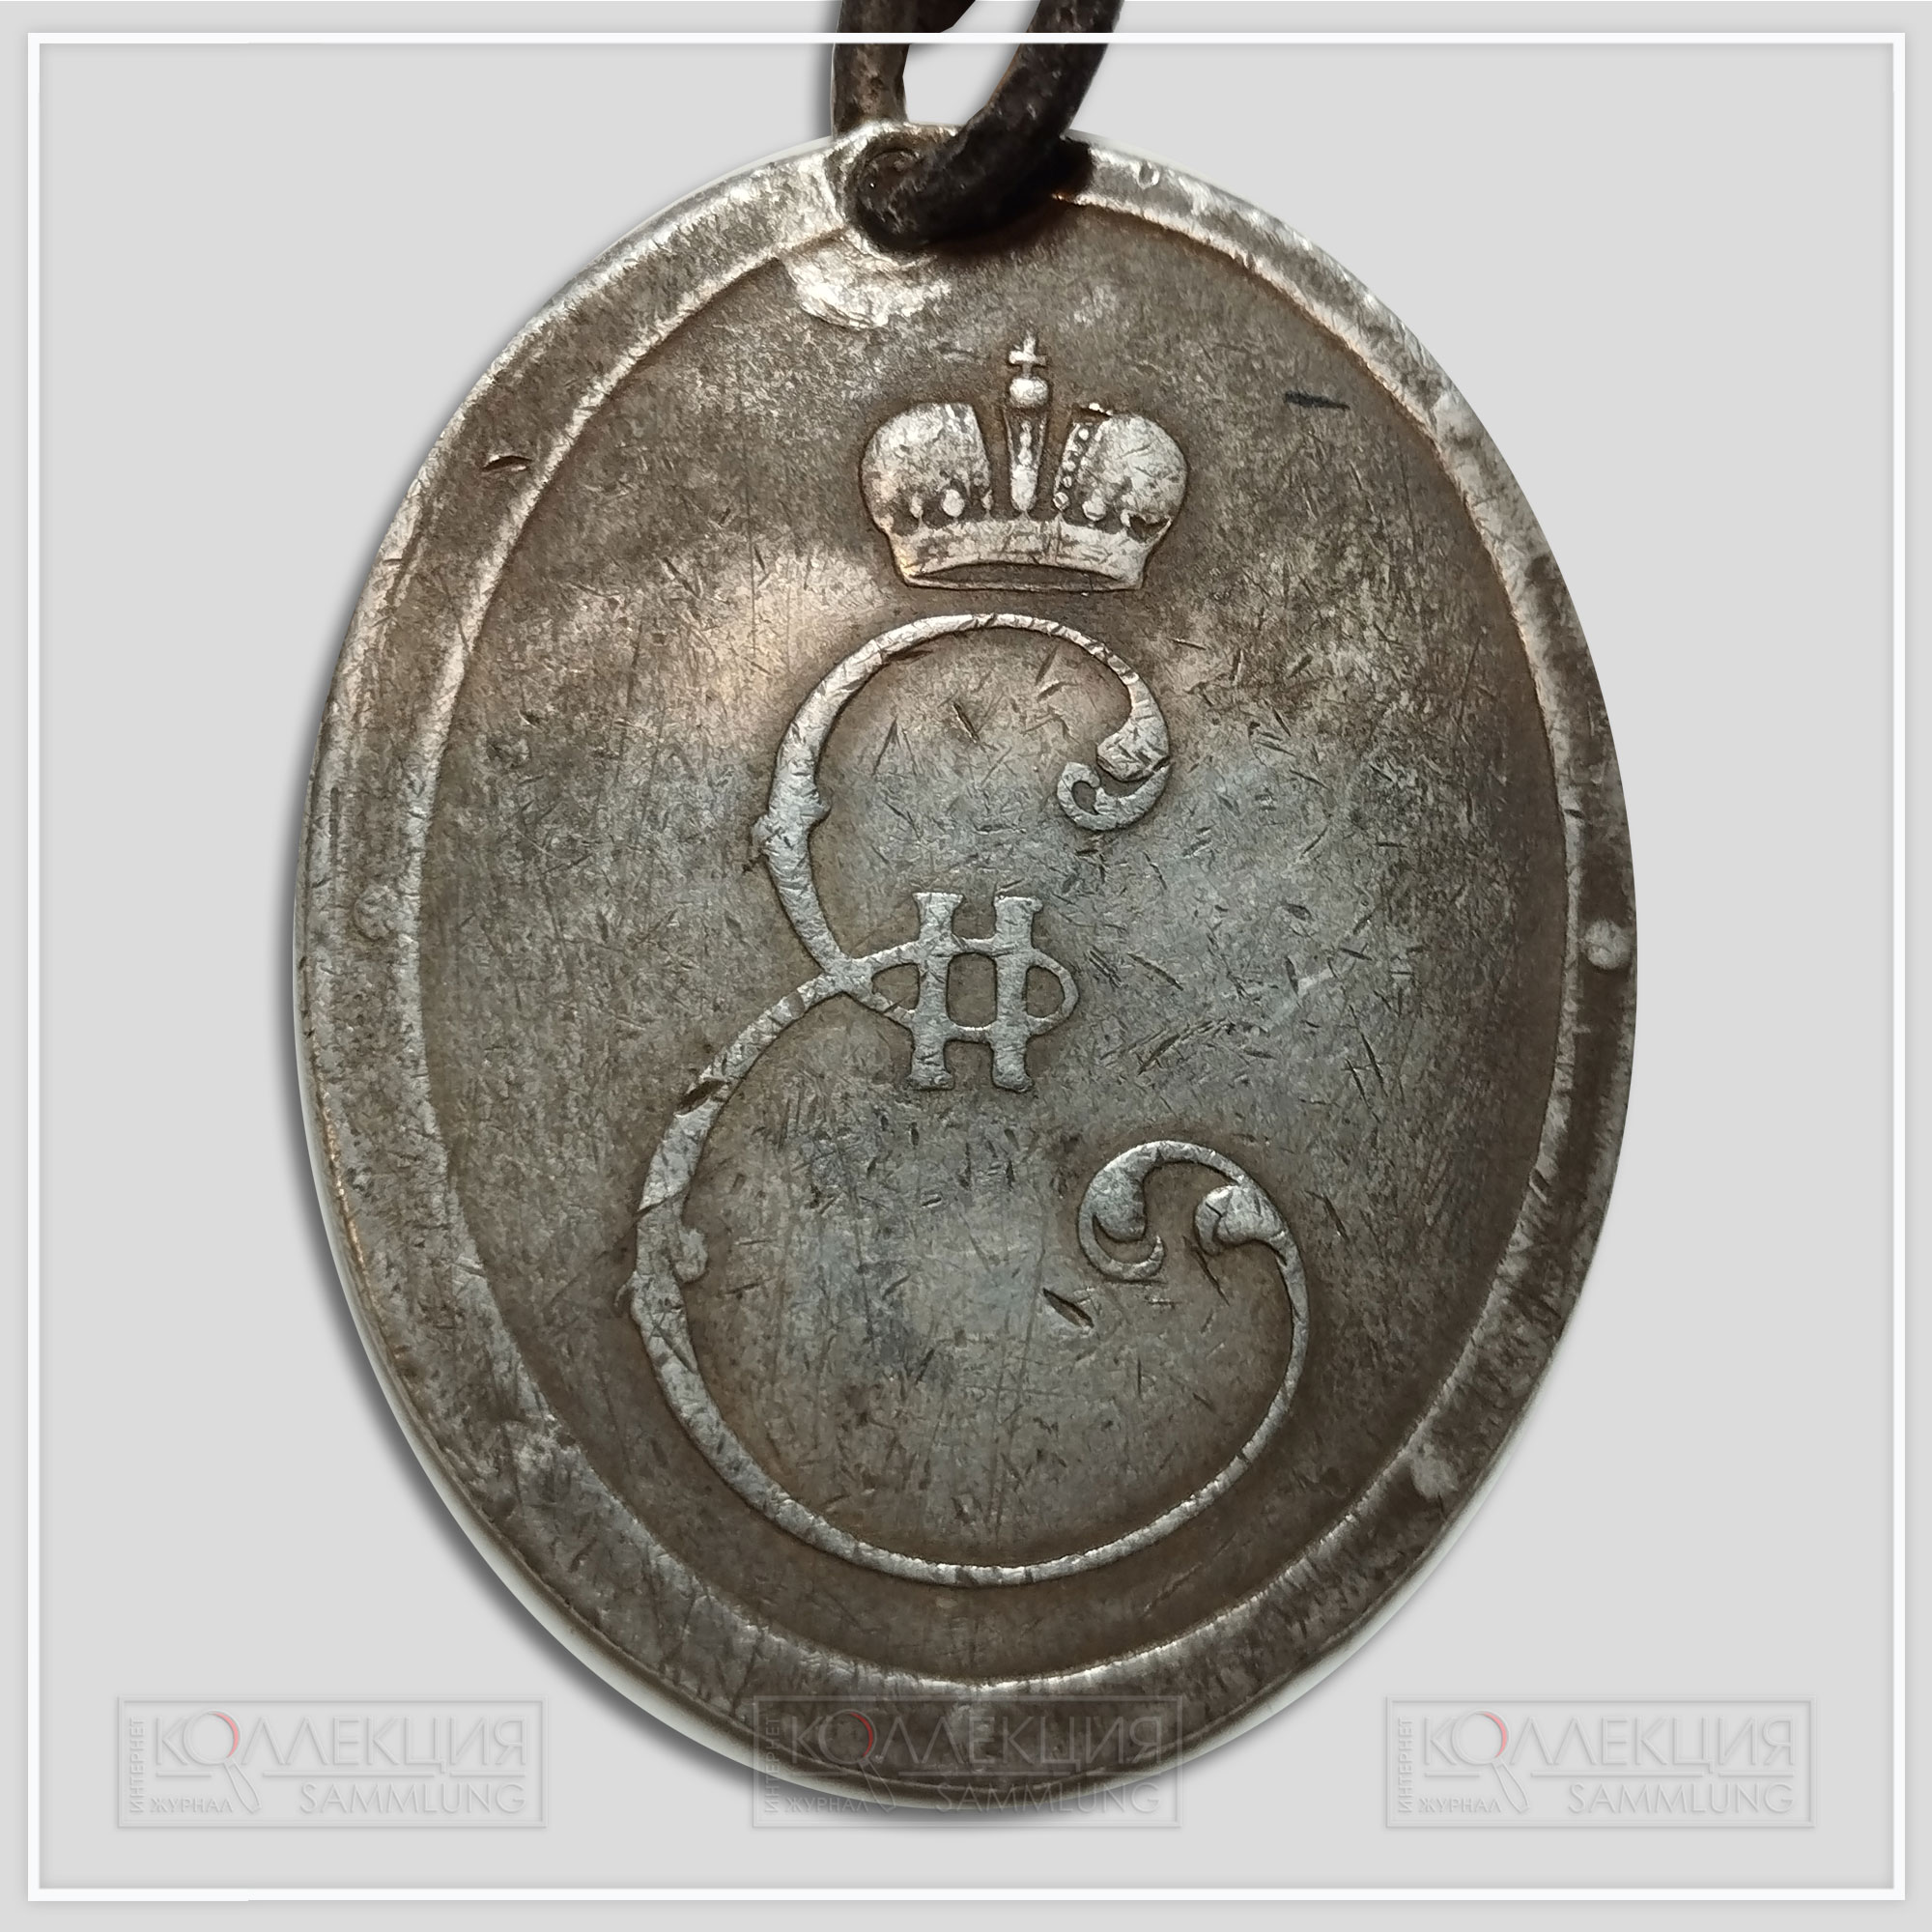 Медаль "Победителям при Мире 1791"